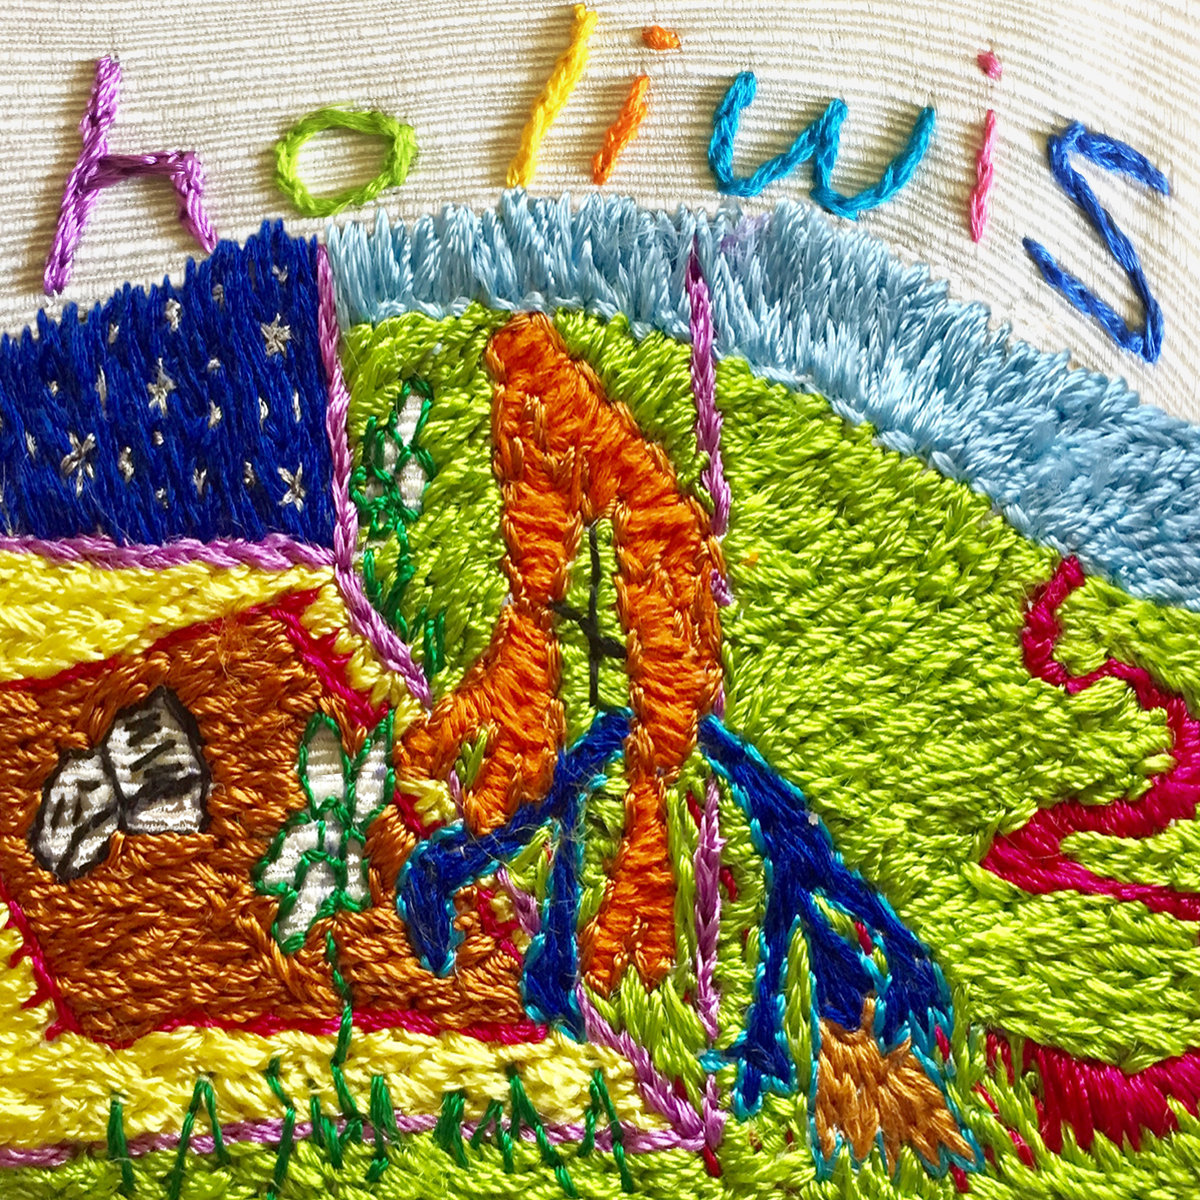 surcarilita holiwis embroidered album cover